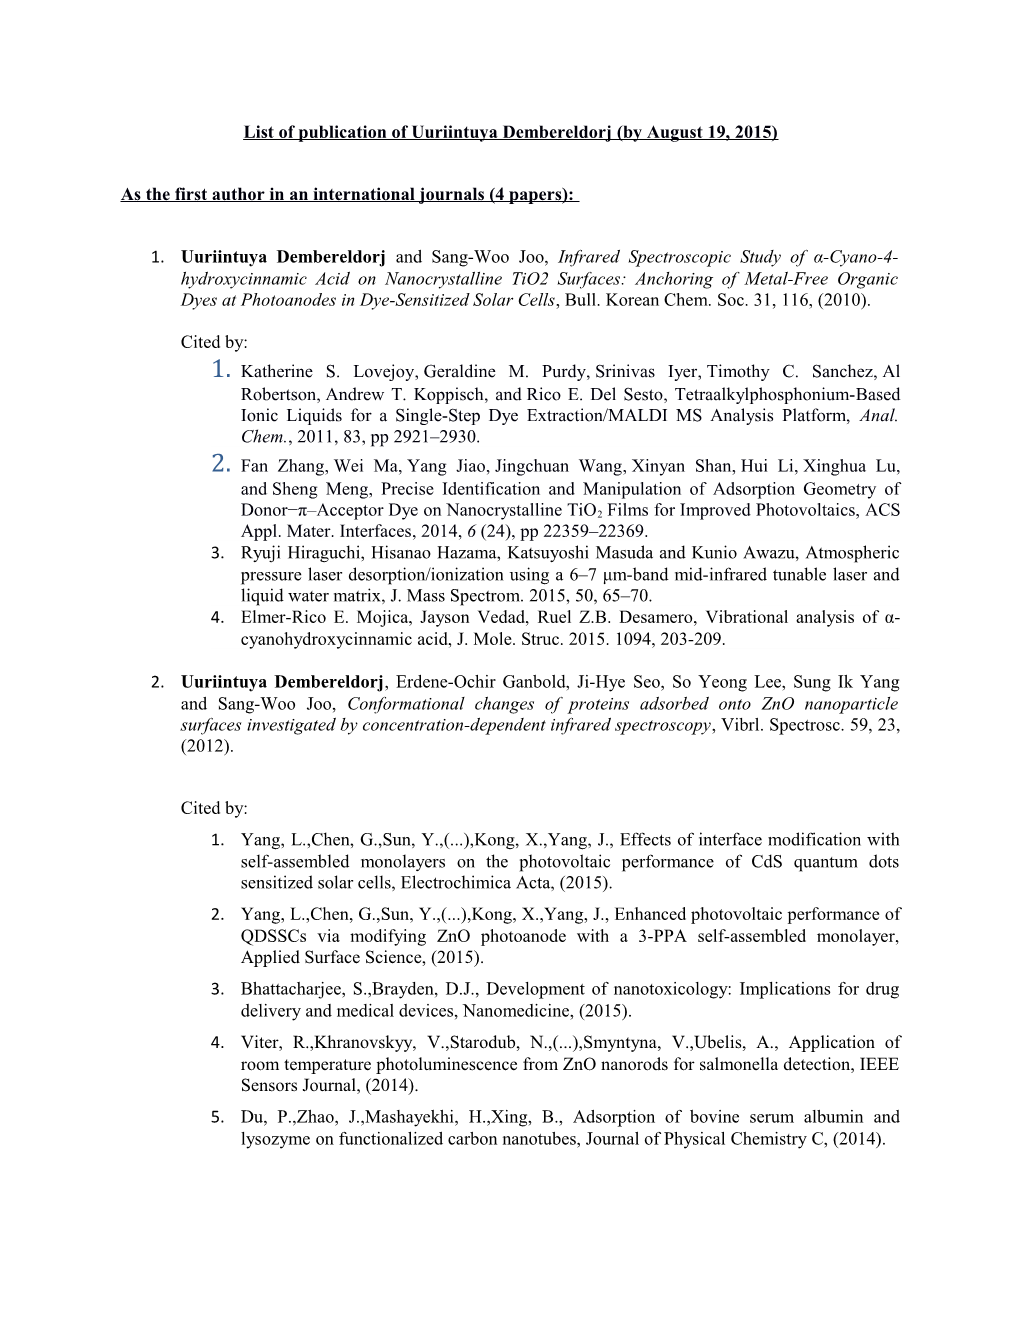 List of Publication of Uuriintuya Dembereldorj (By August 19, 2015)